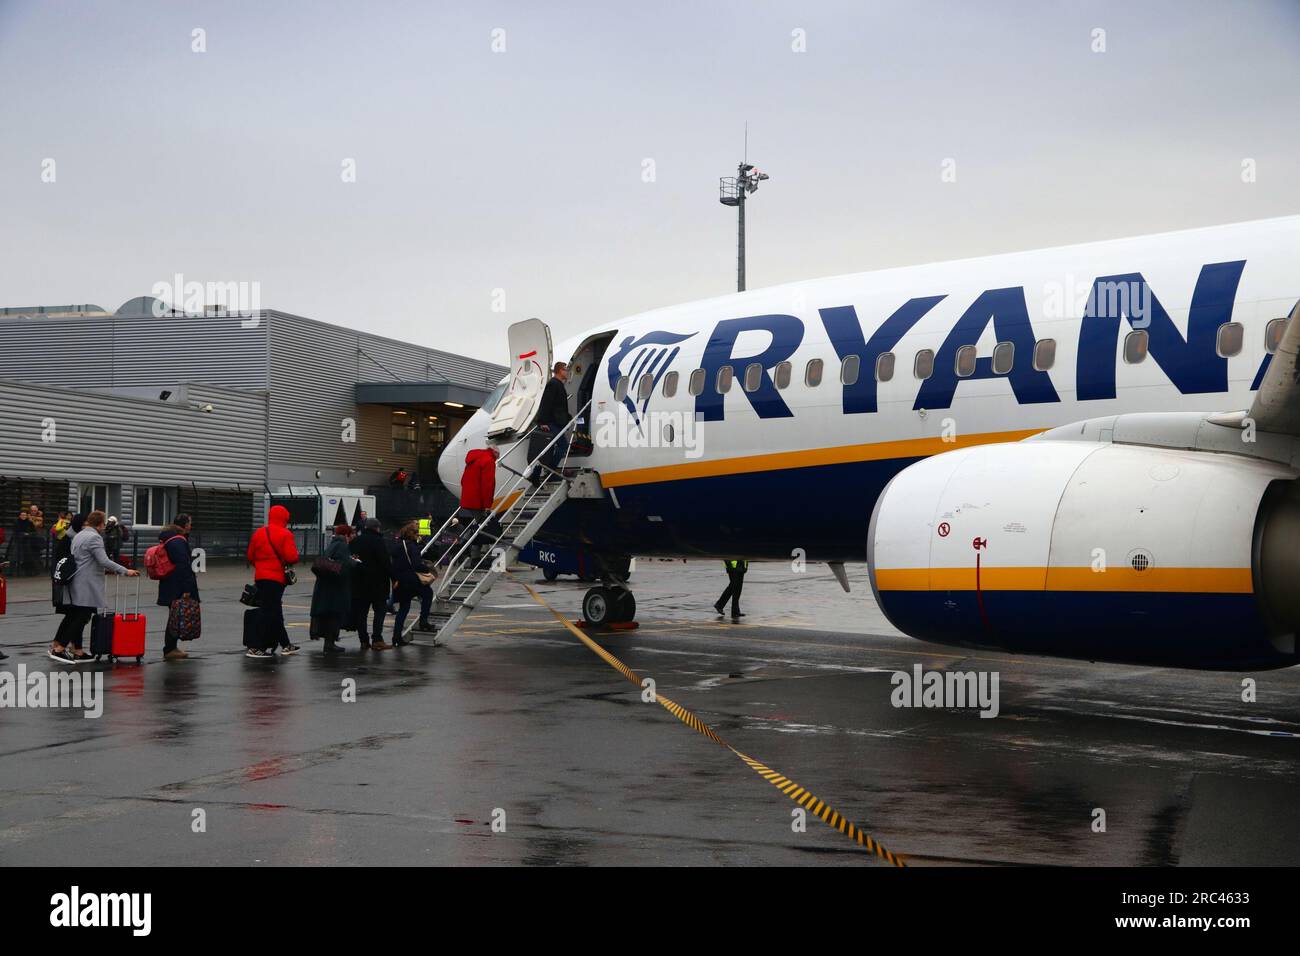 BEAUVAIS, FRANCIA - 11 DICEMBRE 2019: I passeggeri salgono a bordo del Boeing 737 sotto la pioggia della compagnia aerea low cost Ryanair all'aeroporto di Beauvais, Francia. Imbarco da parte di sta Foto Stock